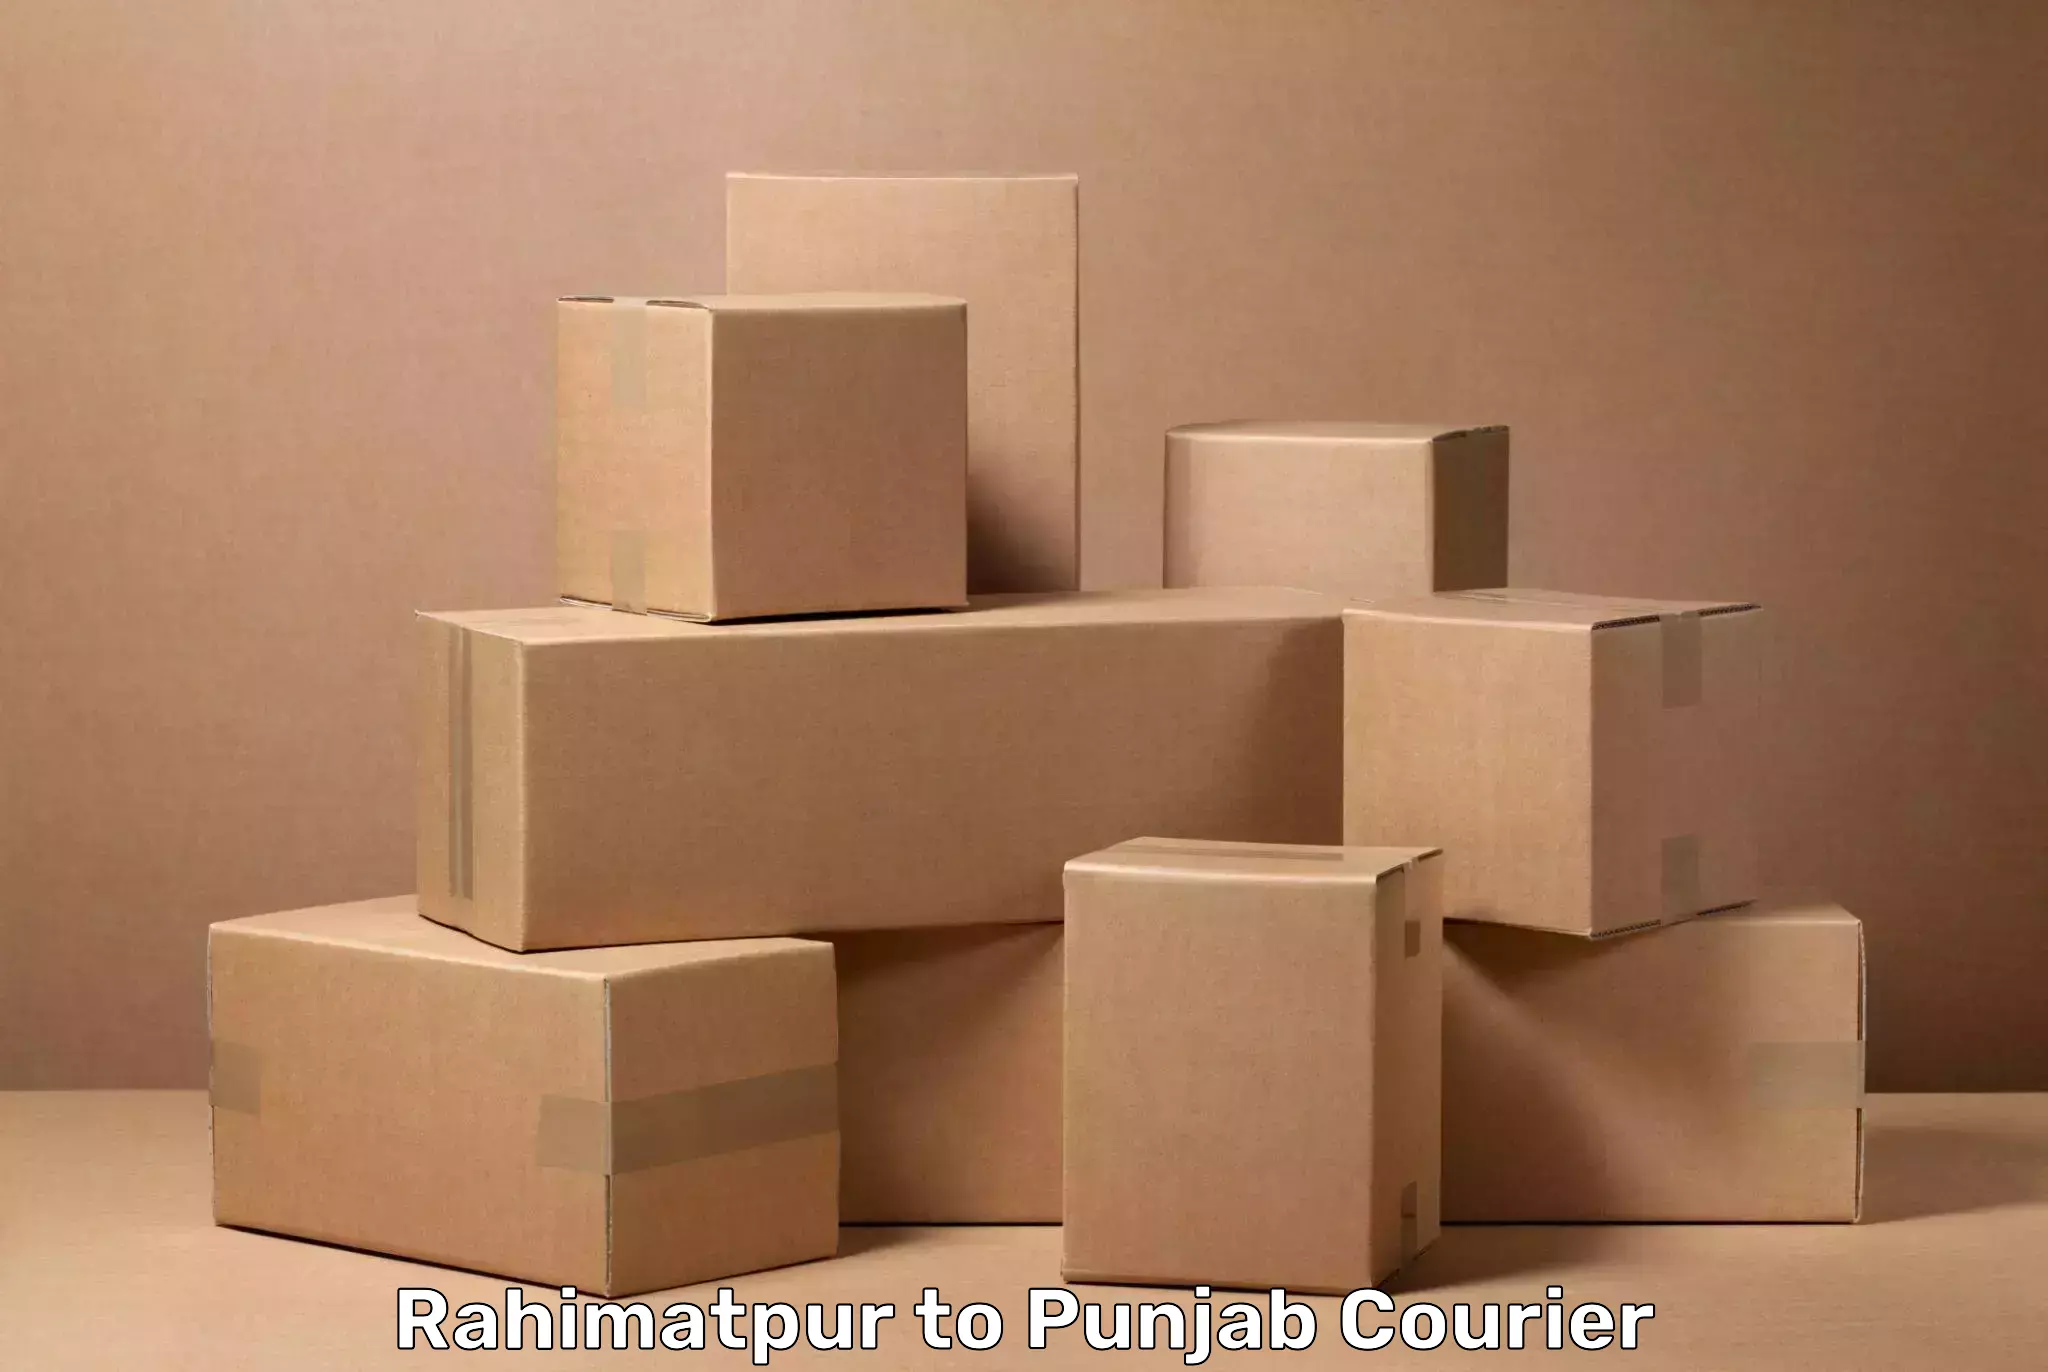 Luggage dispatch service Rahimatpur to Barnala